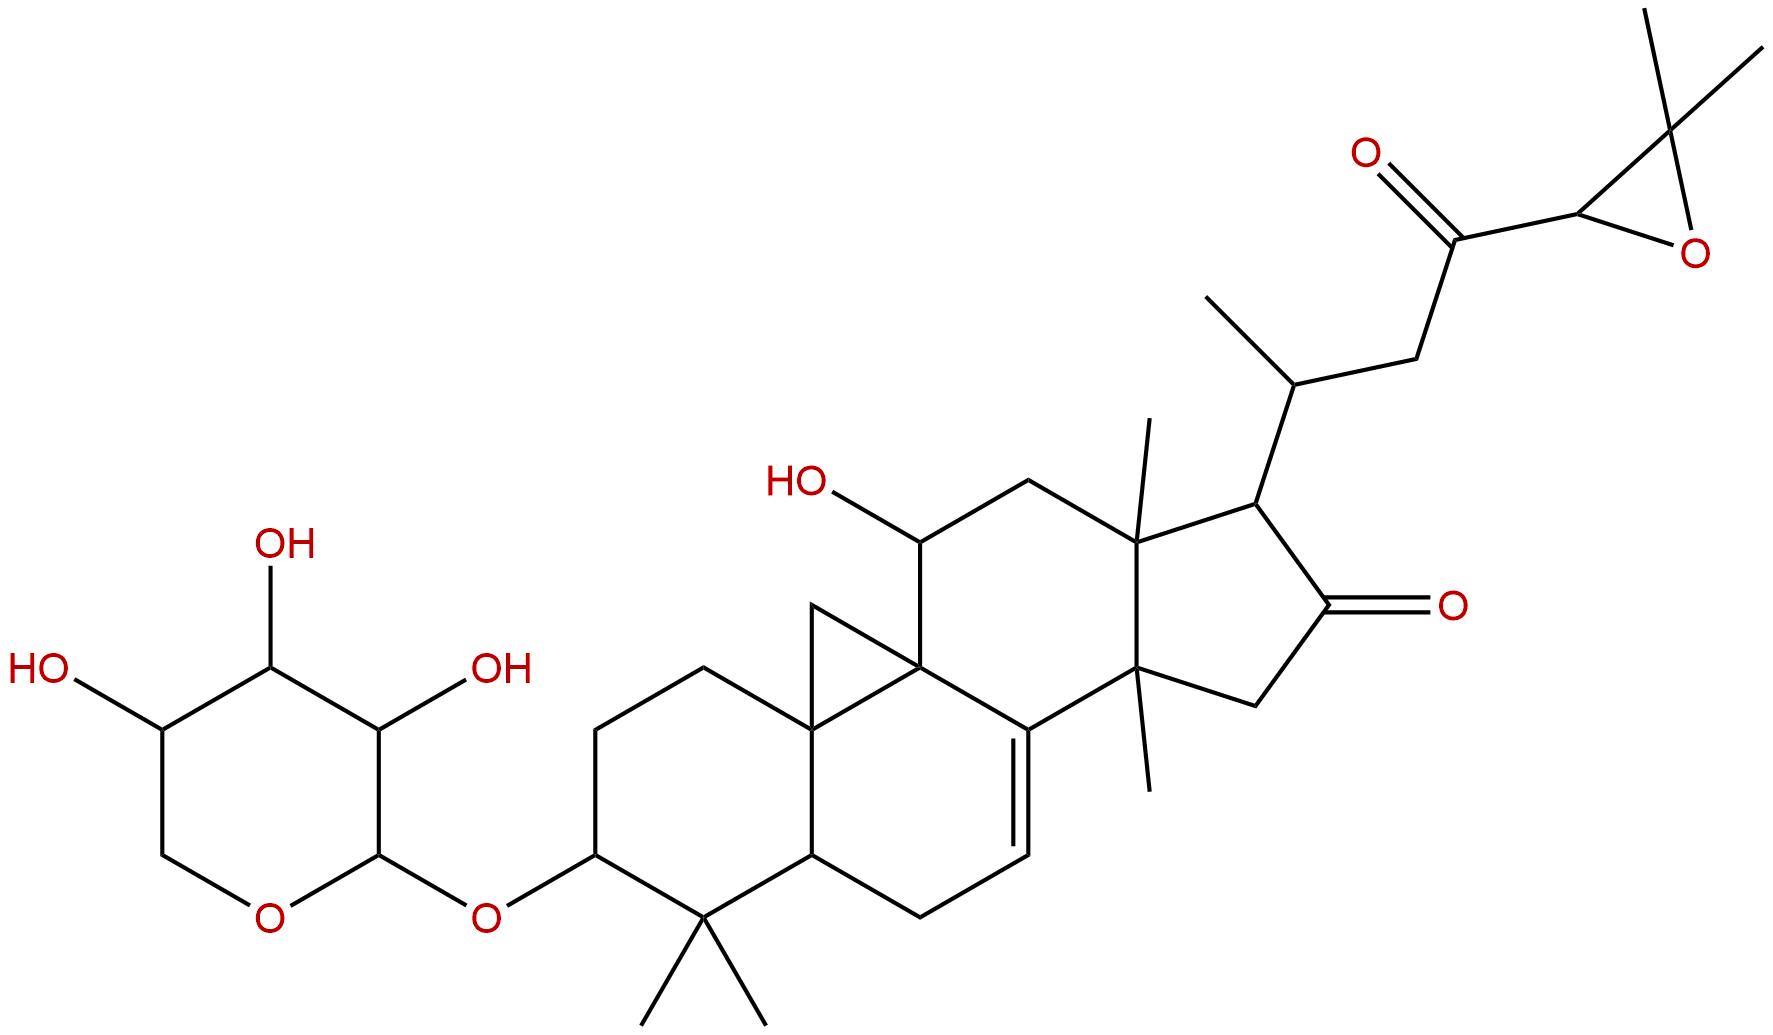 升麻苷H1